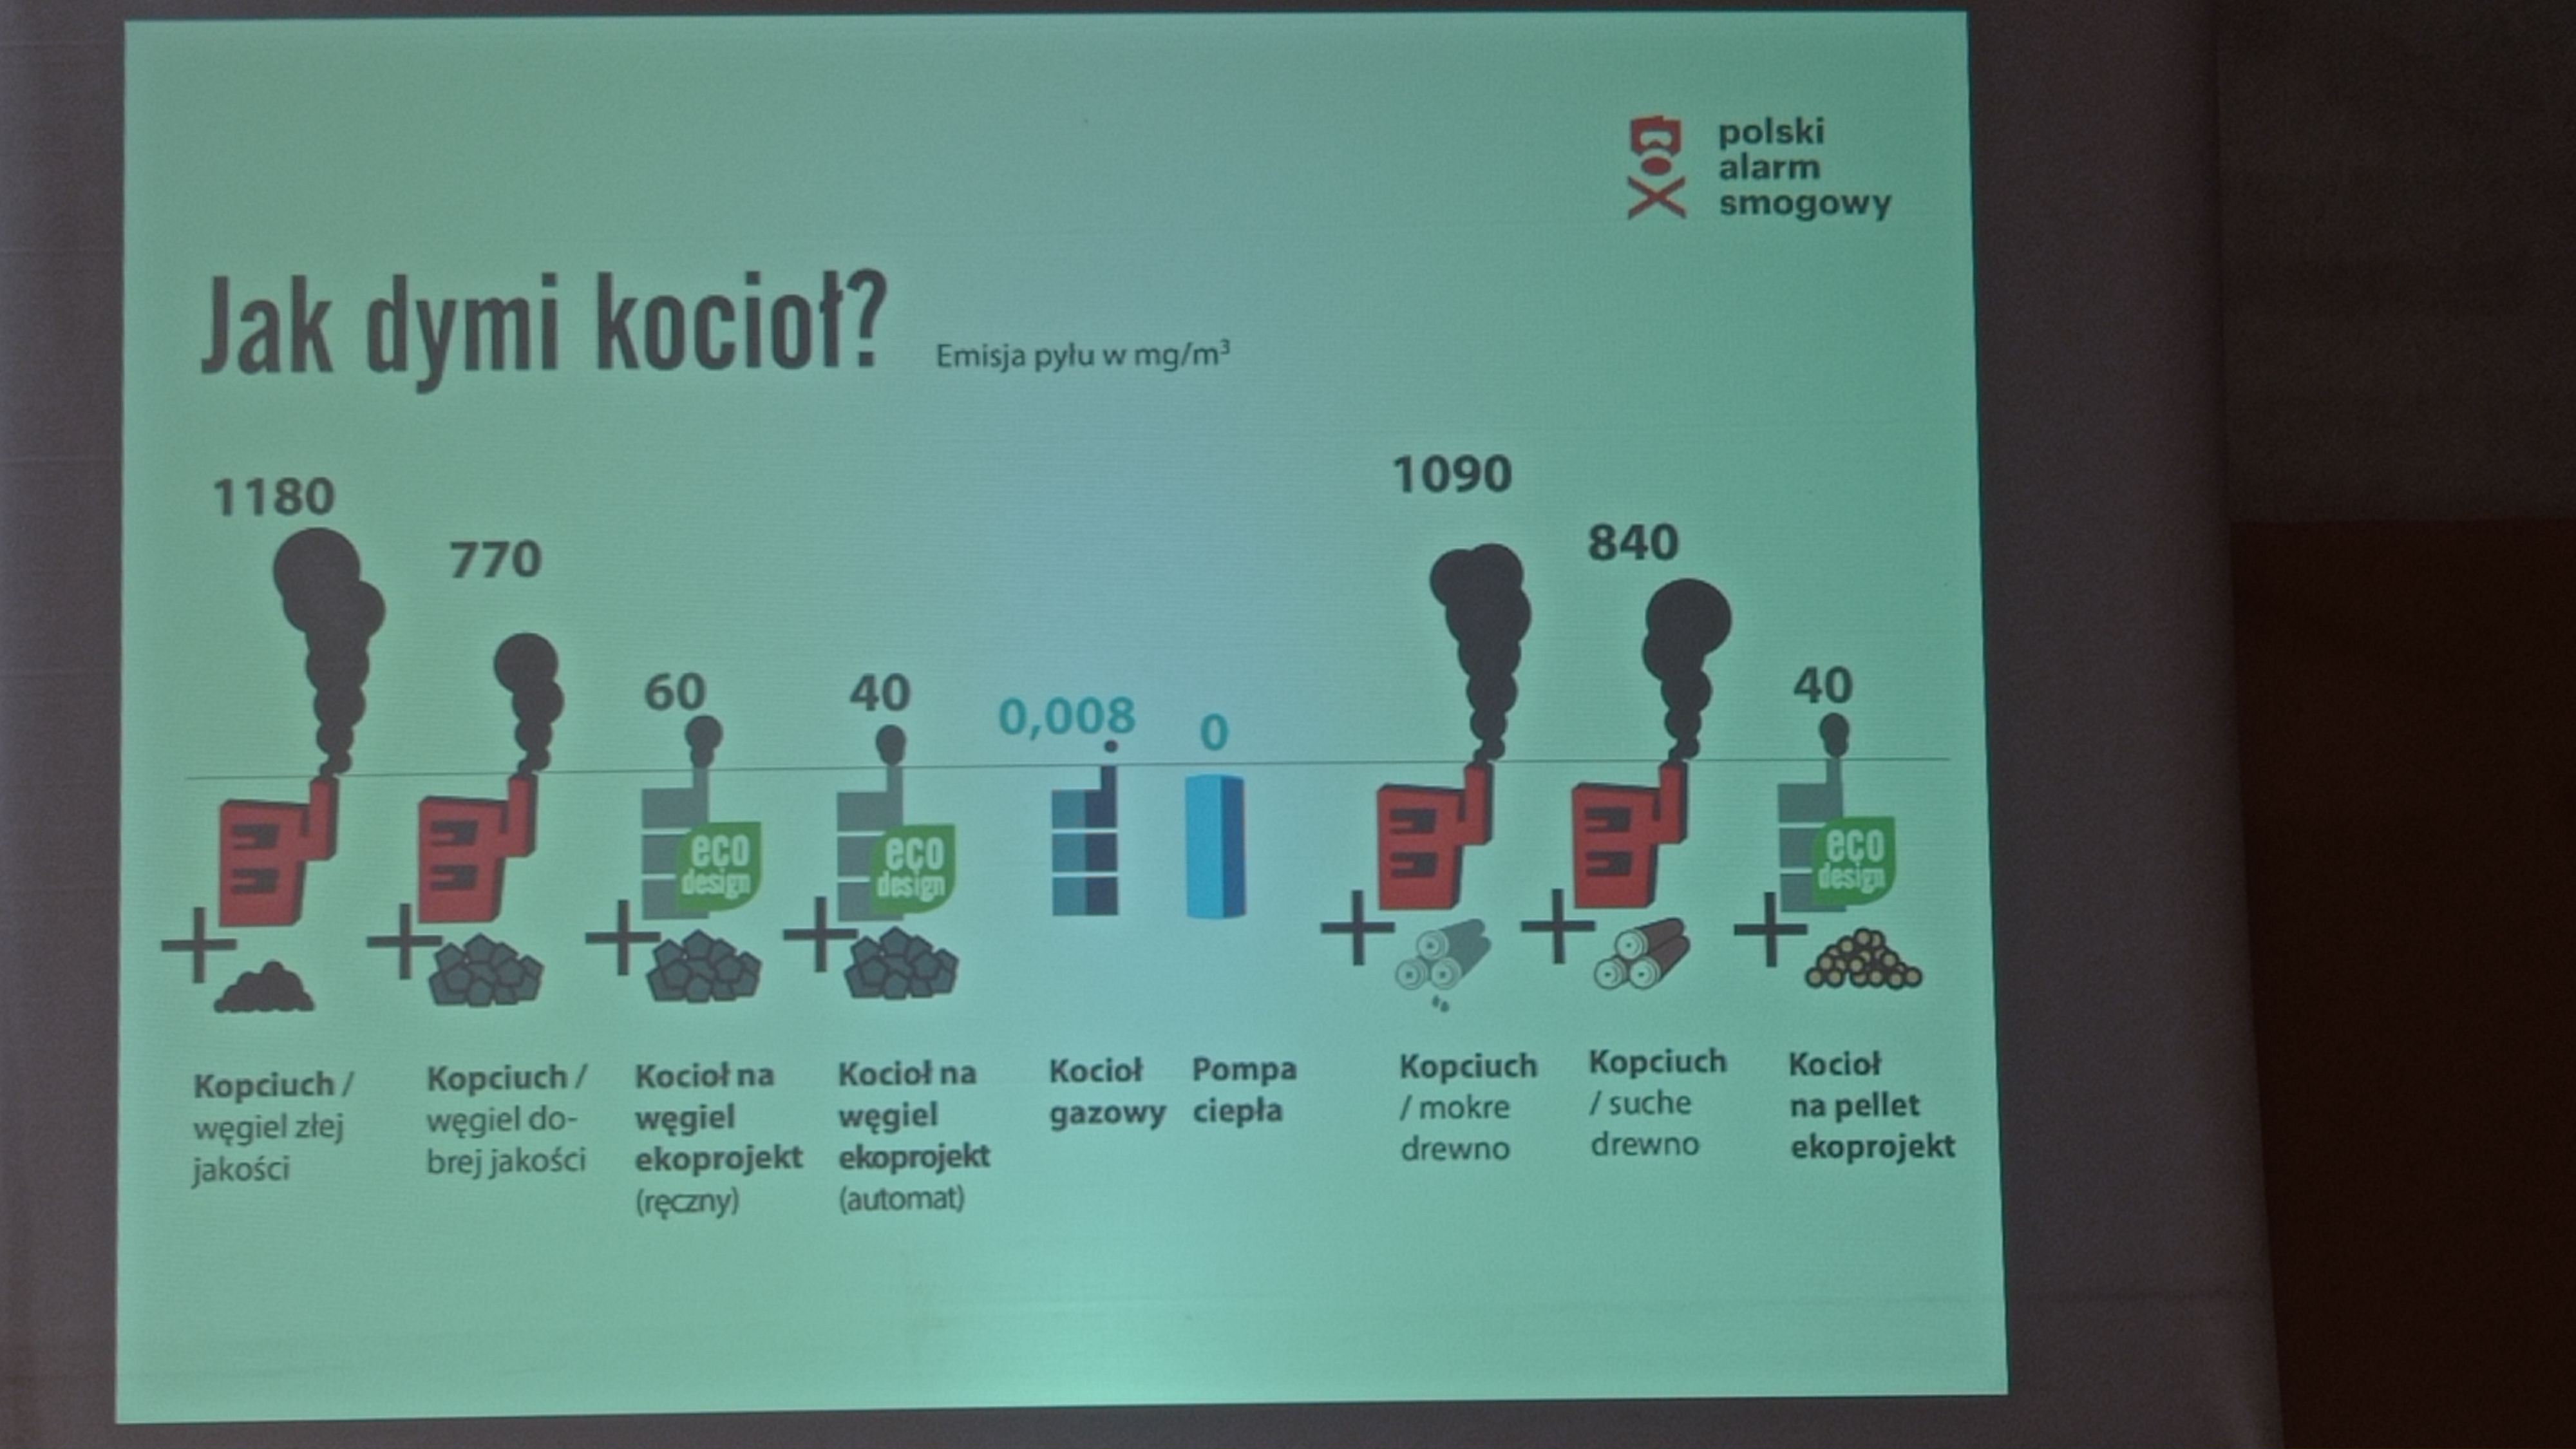 zdjęcie slajdu z informacją o emisji zanieczyszczeń z pieców